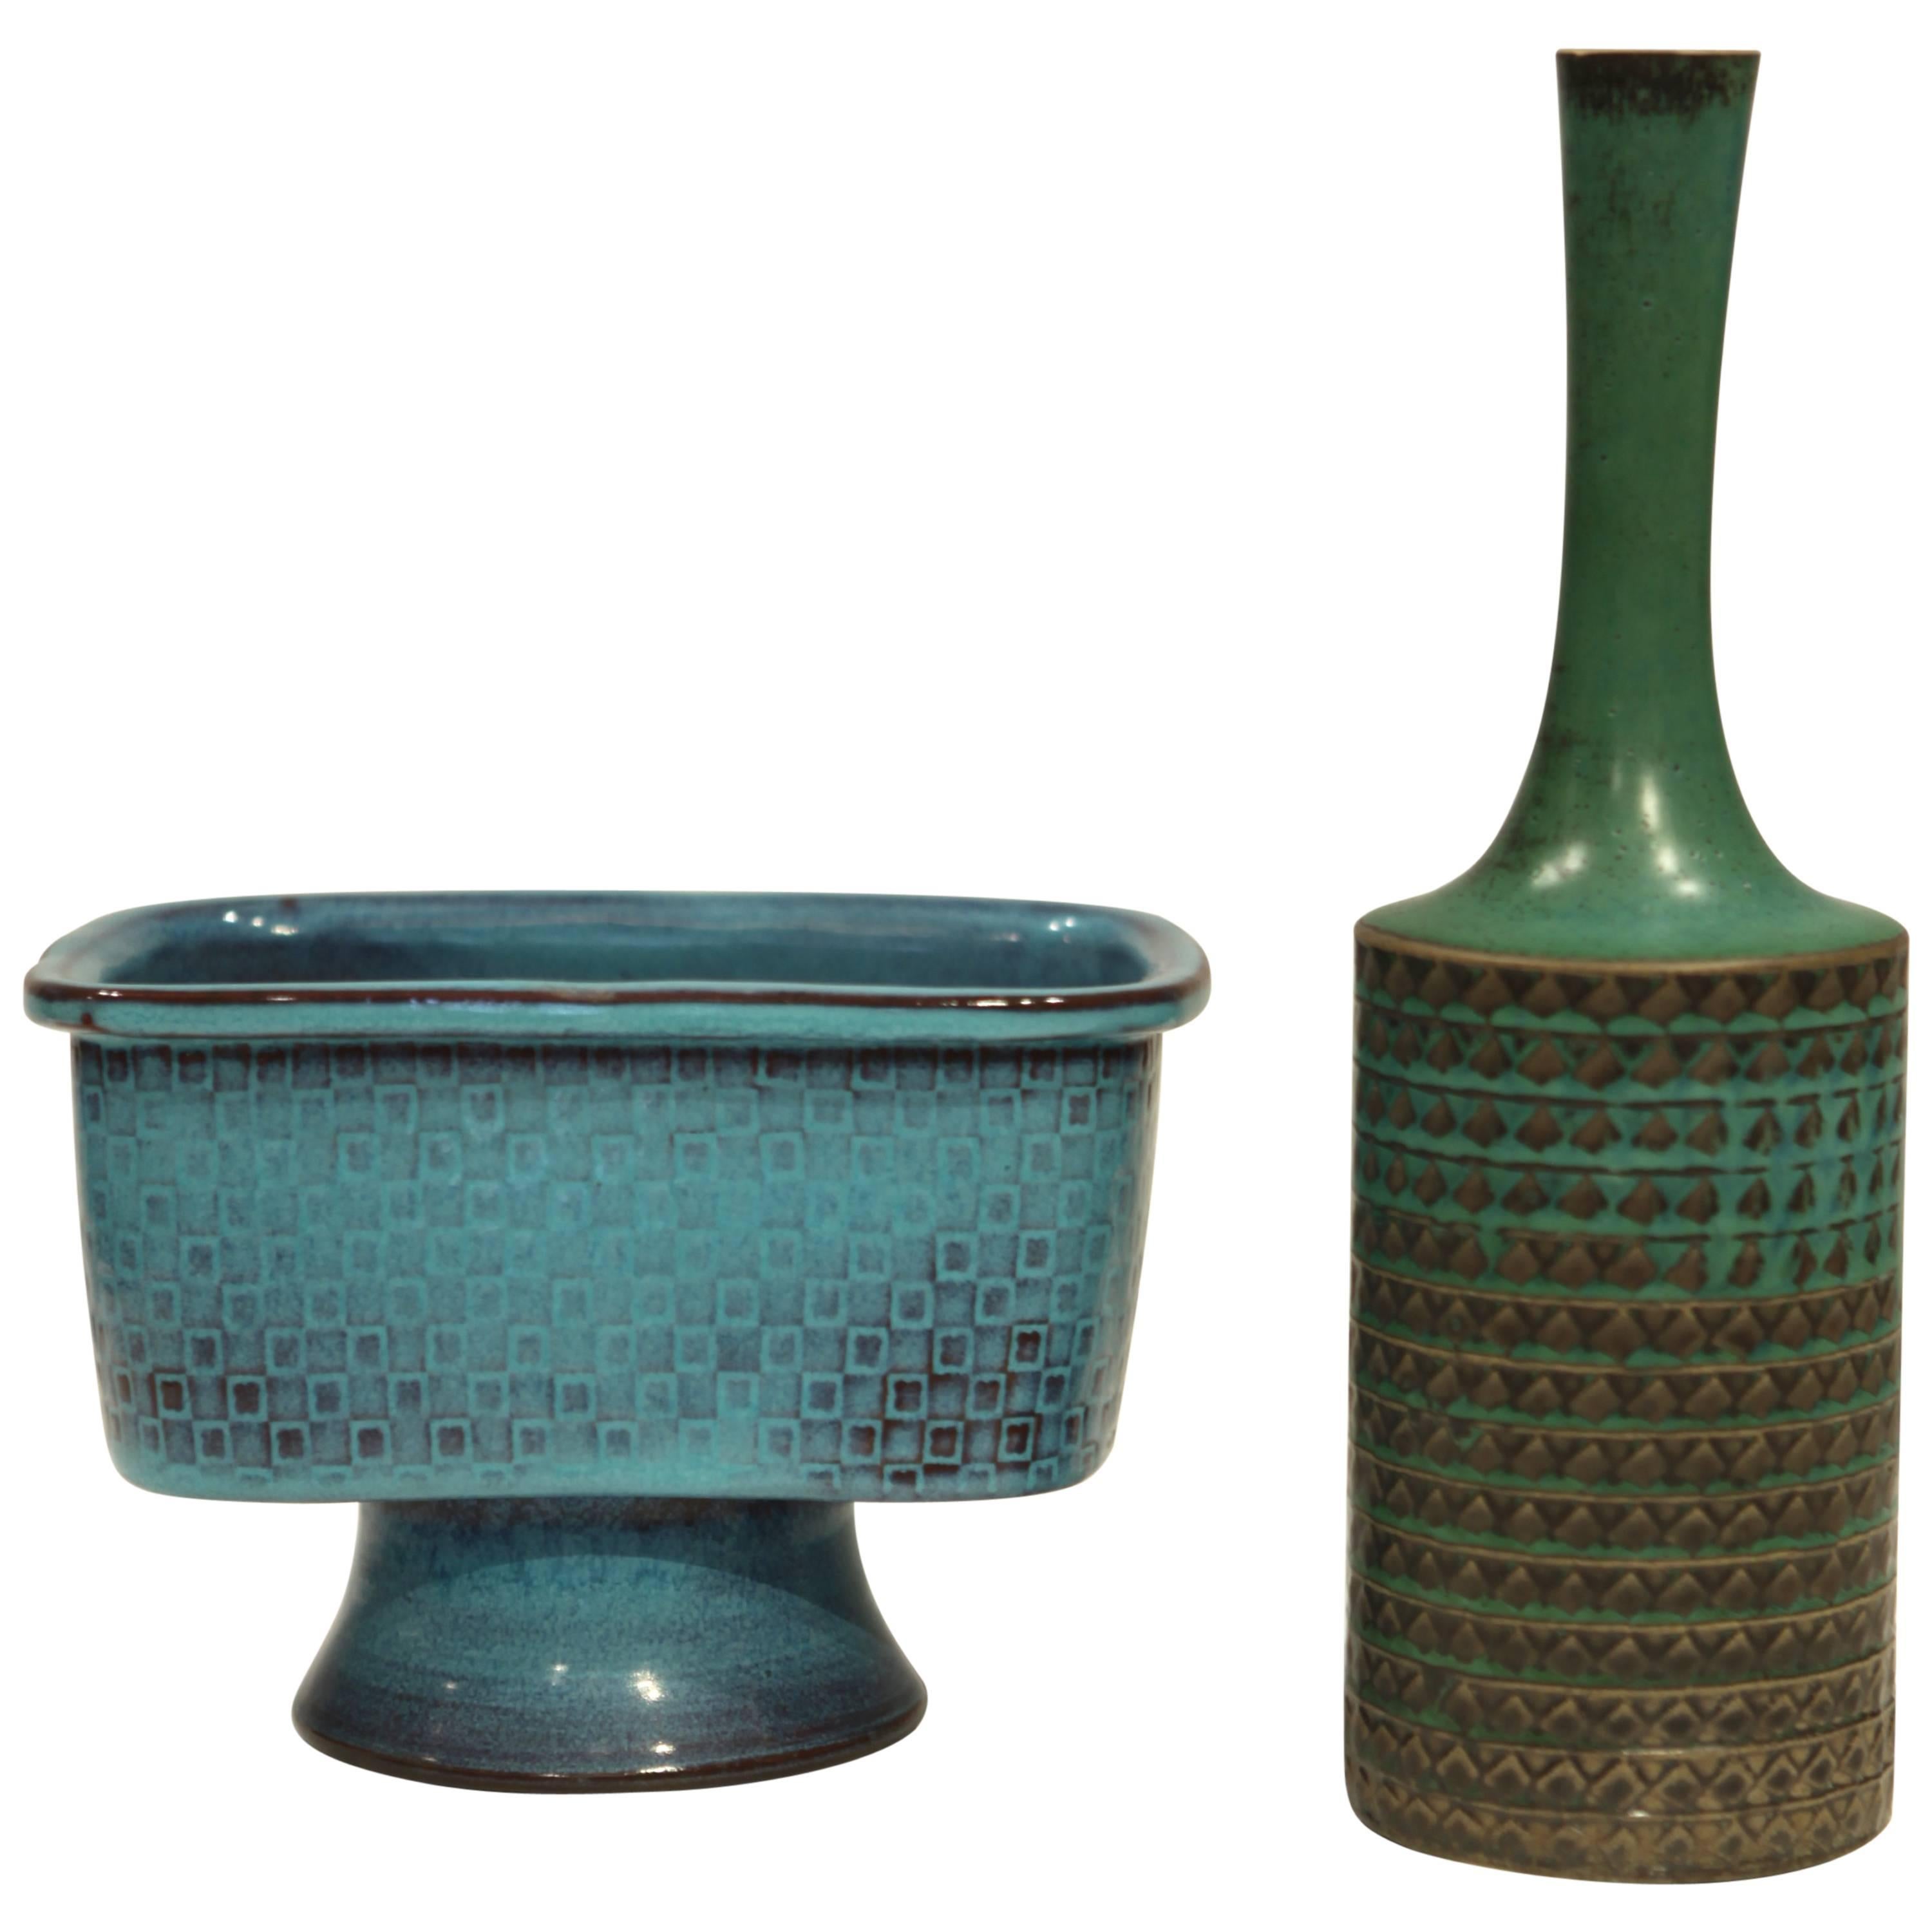 Stig Lindberg Stoneware Vases, Gustavsberg Studio, 1967